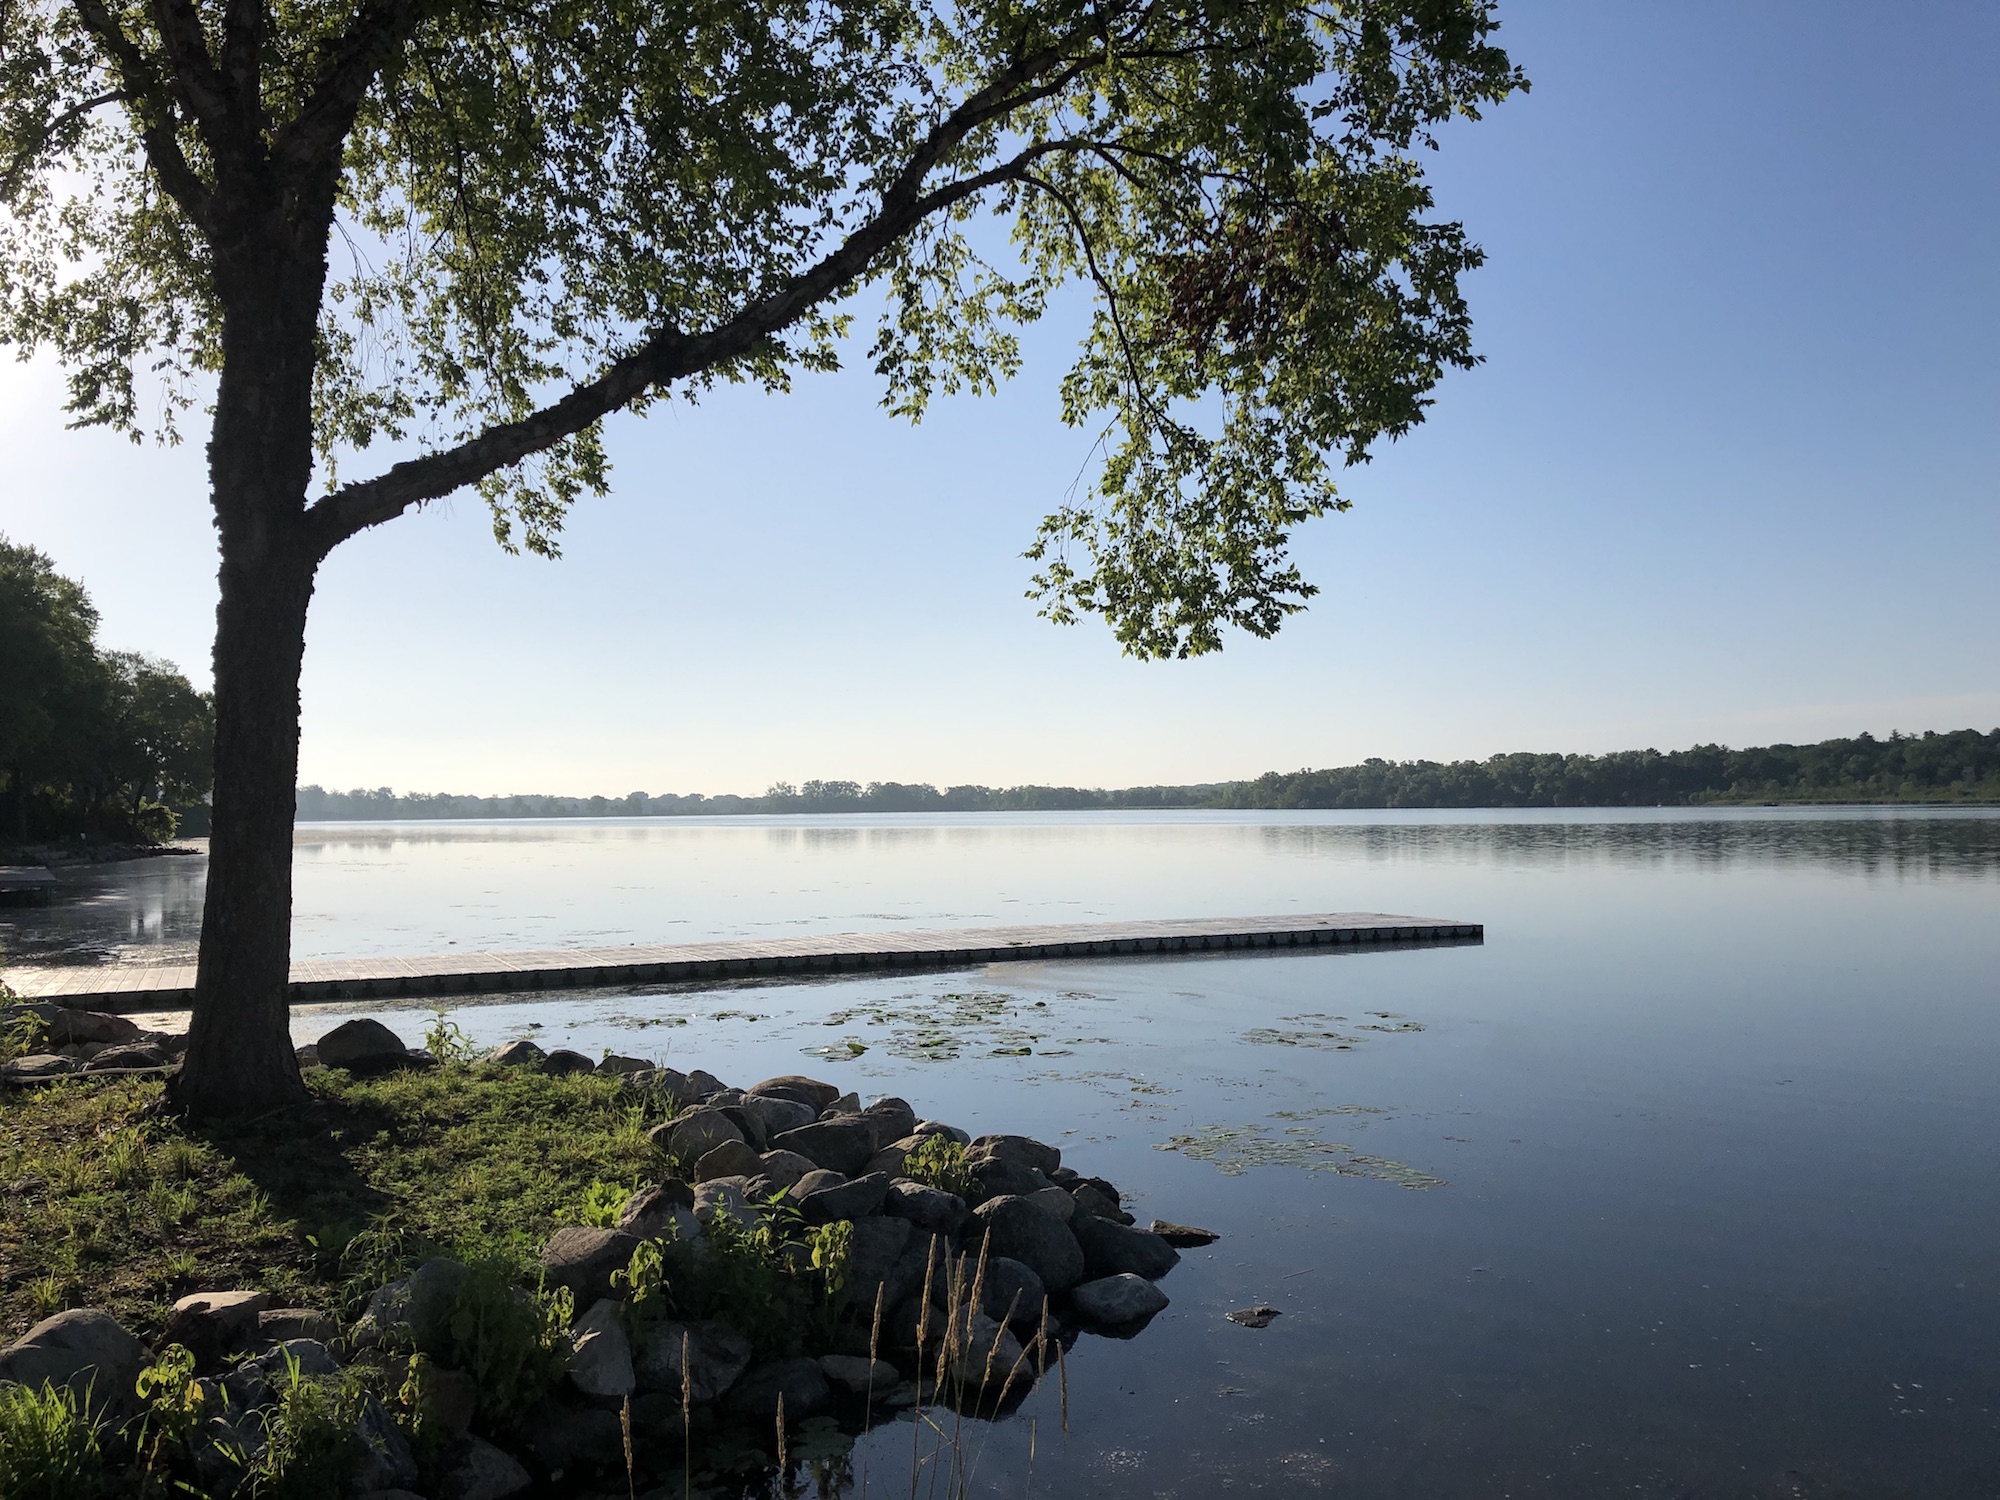 Lake Wingra on July 5, 2019.